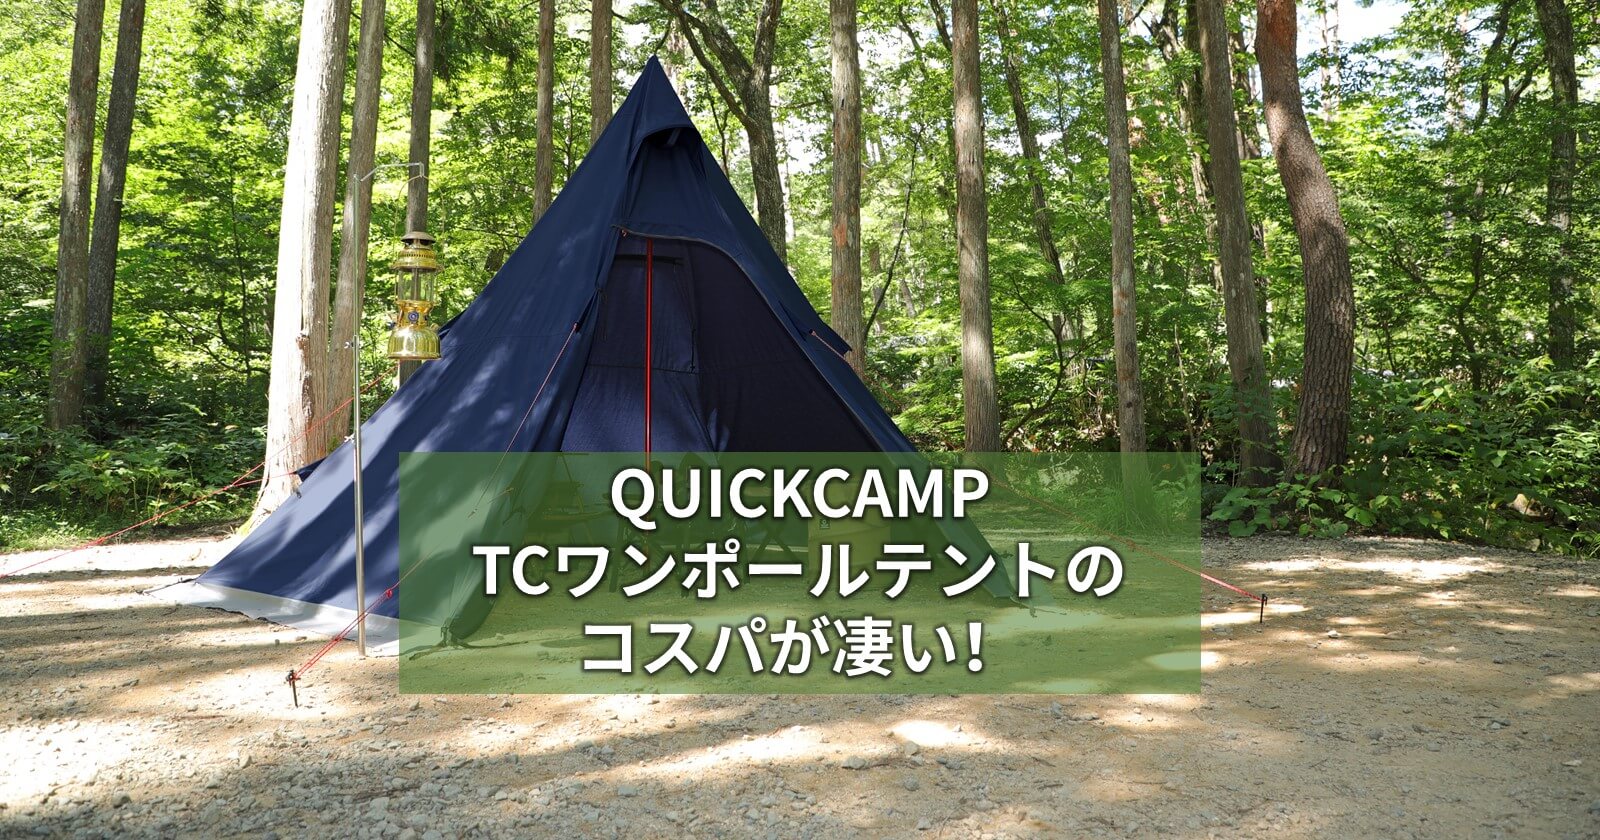 Quickcamp Tcワンポールテントのコスパが凄い キャンプ アウトドアのtakibi タキビ